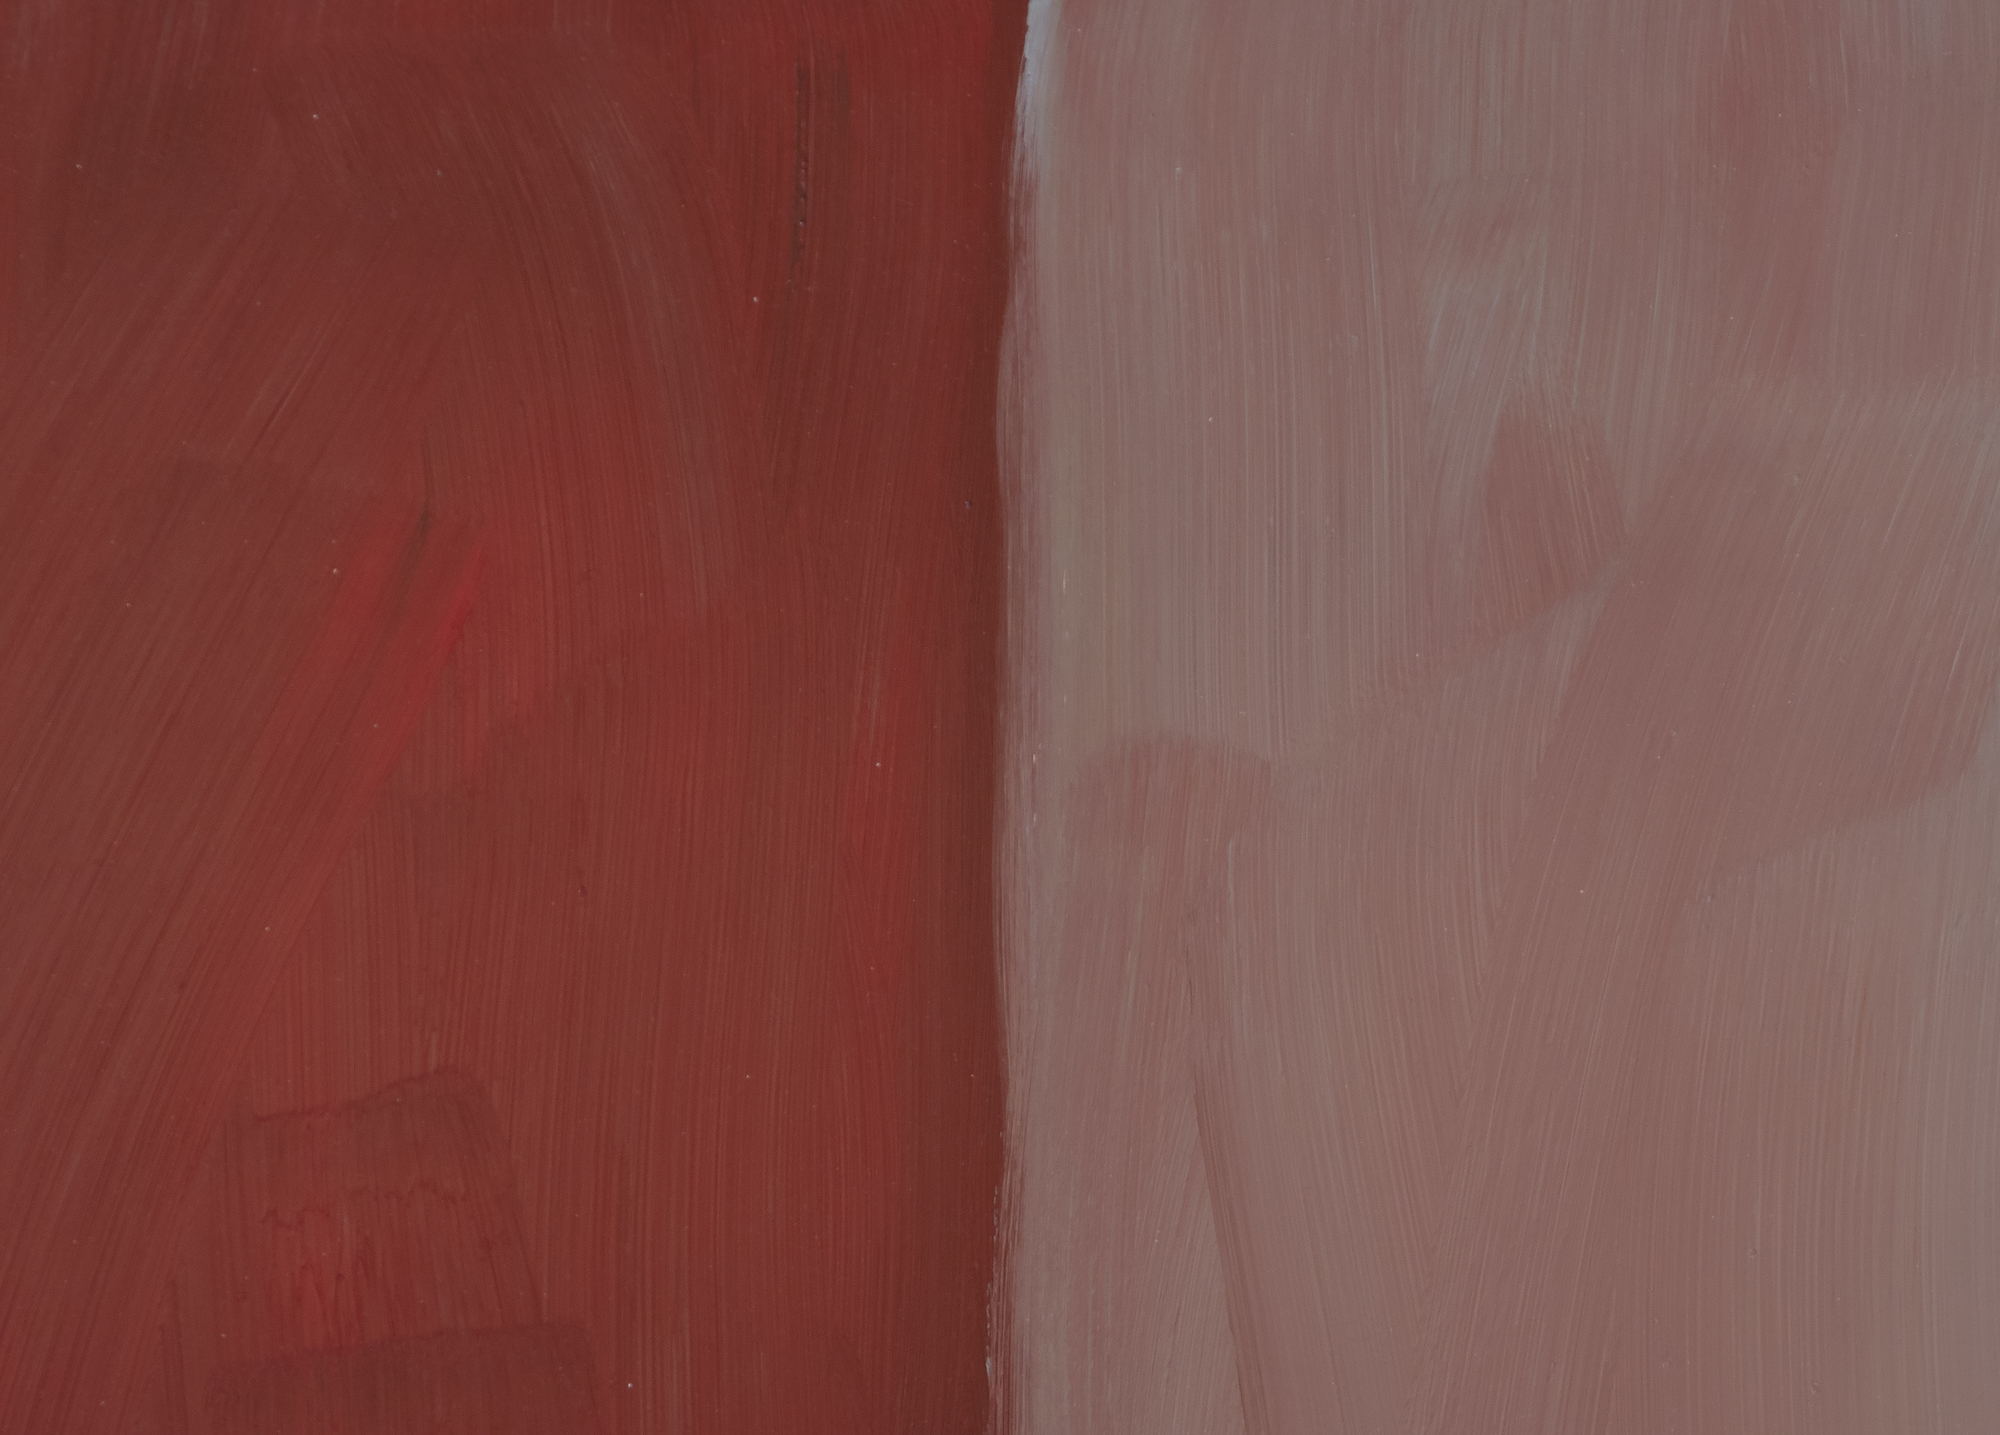 شون سكولي - أحمر رمادي - زيت على الألومنيوم - 85 × 75 بوصة.